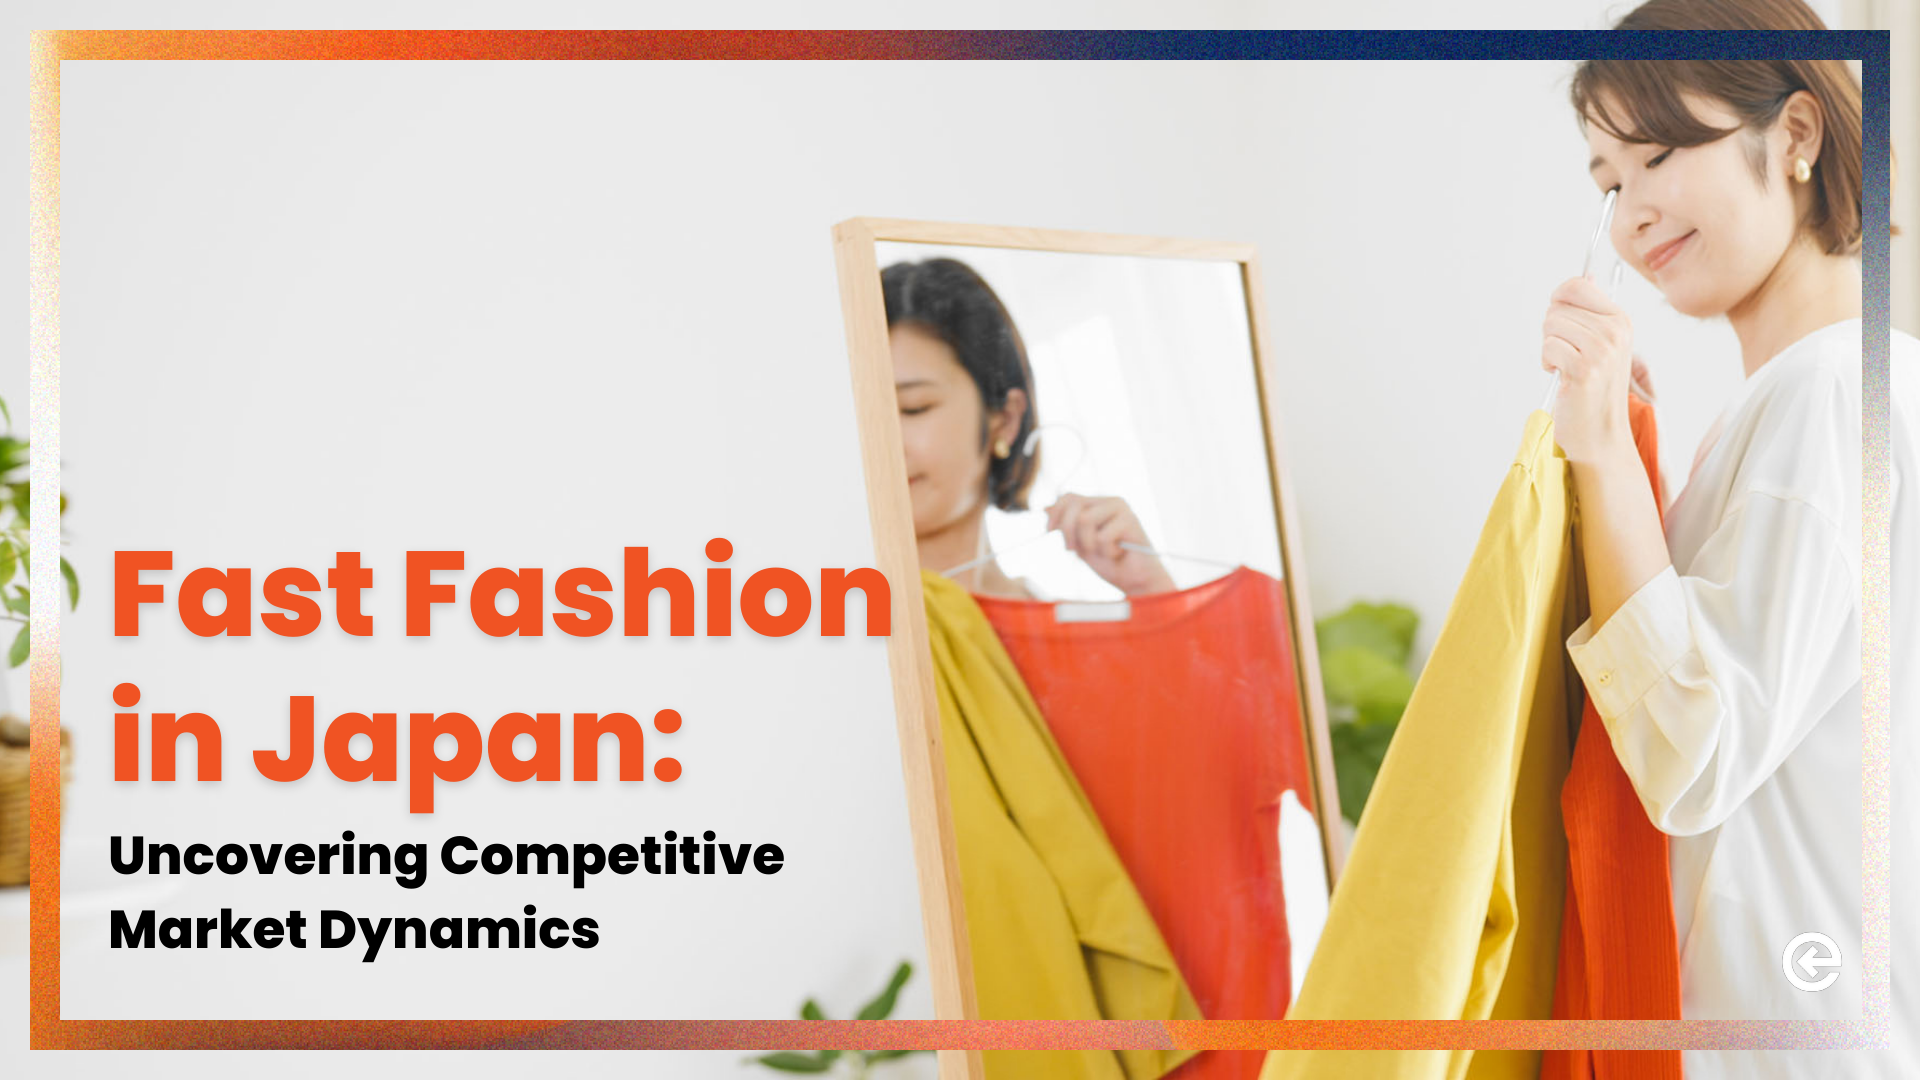 जापान में फास्ट फैशन: प्रतिस्पर्धी बाजार गतिशीलता को उजागर करना